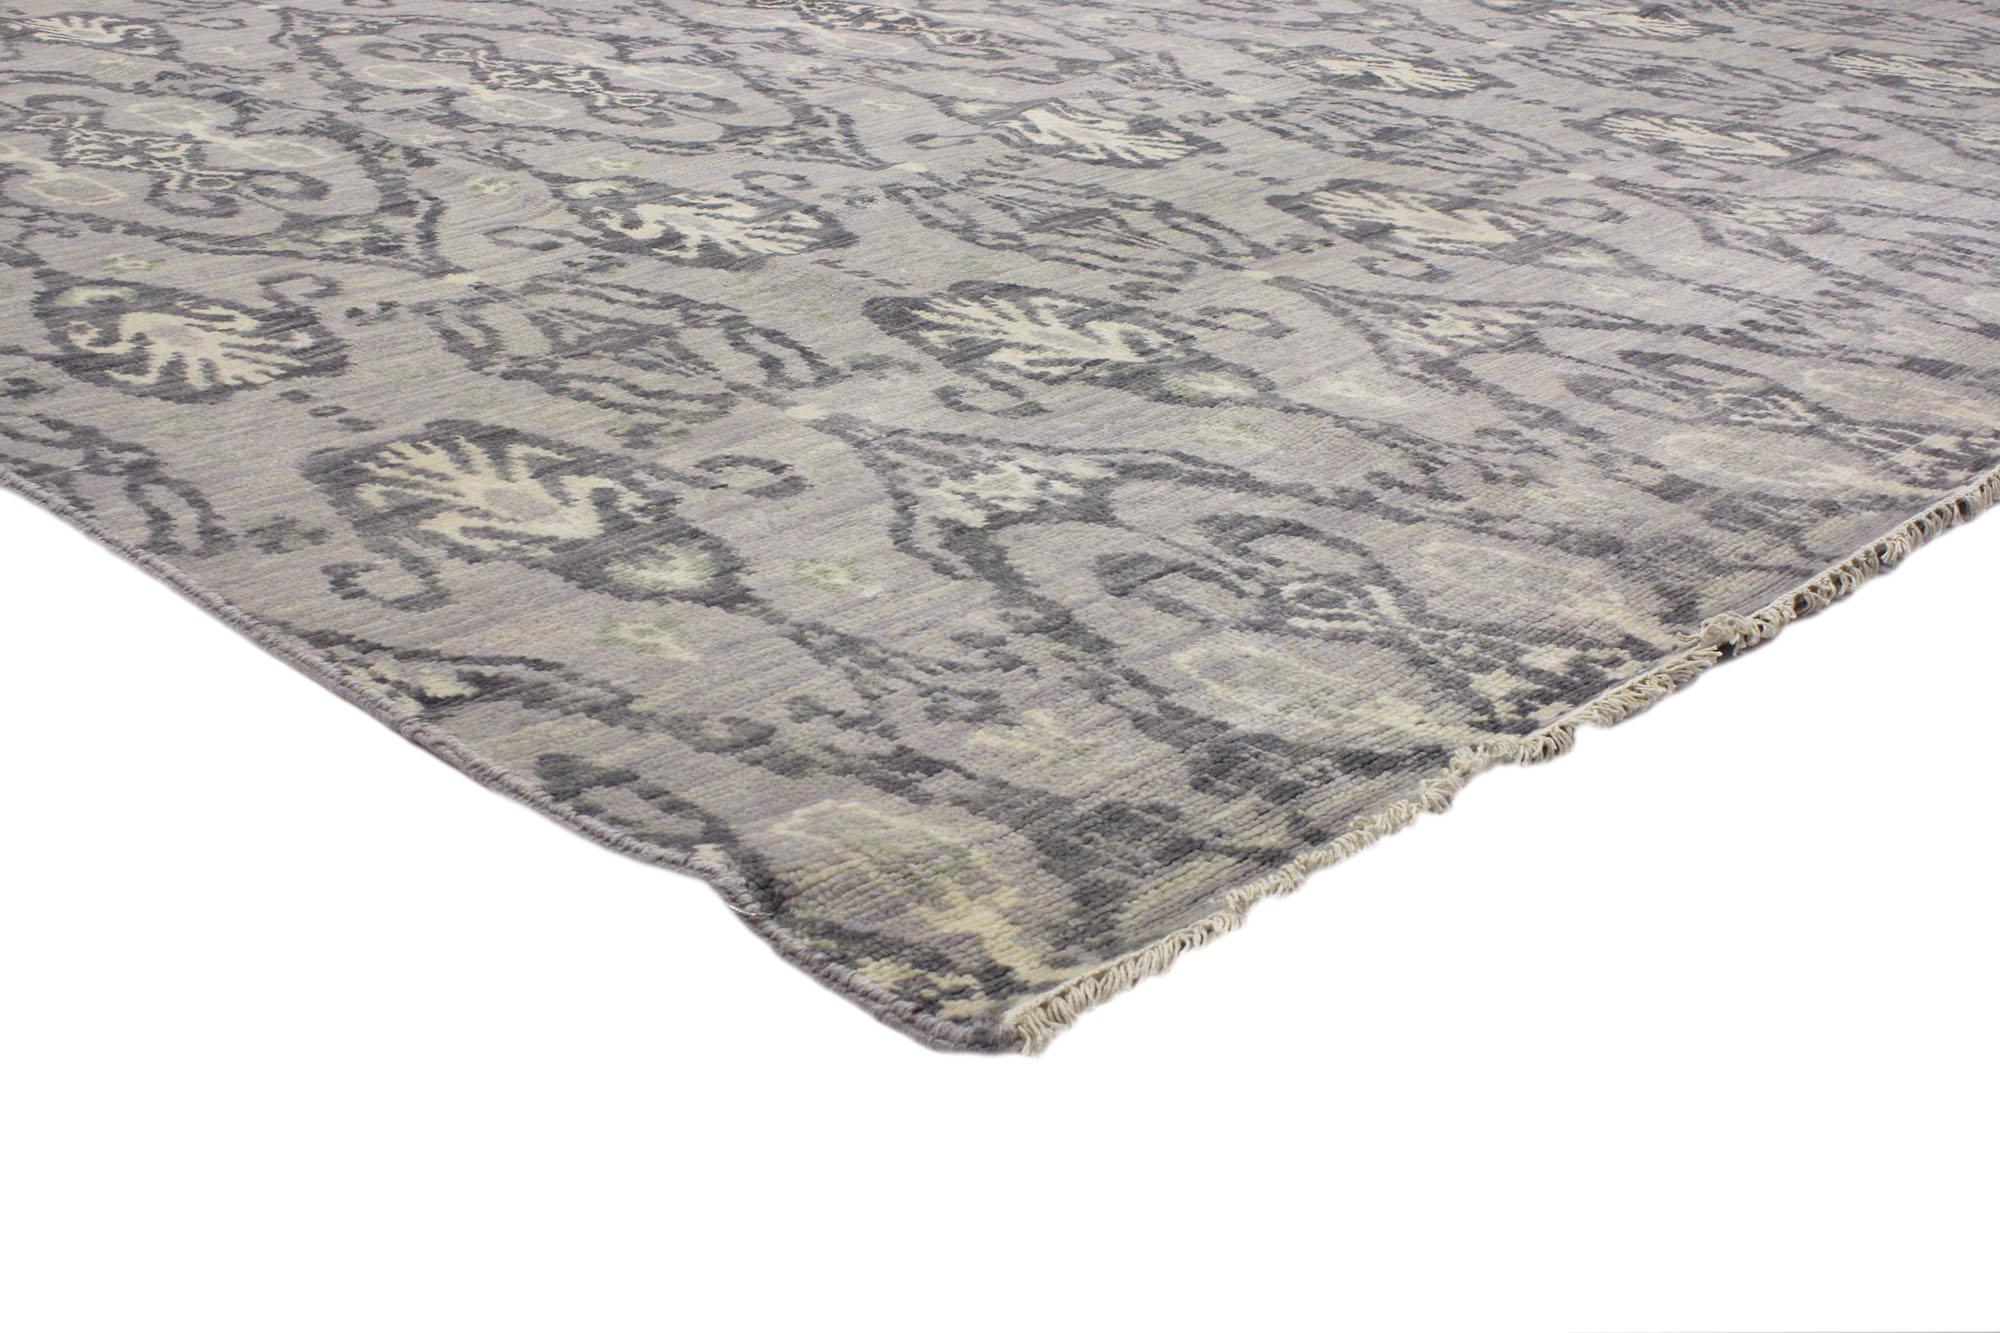 30262 Transitional Gray Ikat Teppich, 09'11 x 13'10. Mit seinem zeitlosen Design und den kühlen Grautönen verkörpert dieser handgeknüpfte Wollteppich Damask Ikat einen modernen Stil mit ausgewogener Symmetrie. Das abgewetzte graue Feld ist mit einem